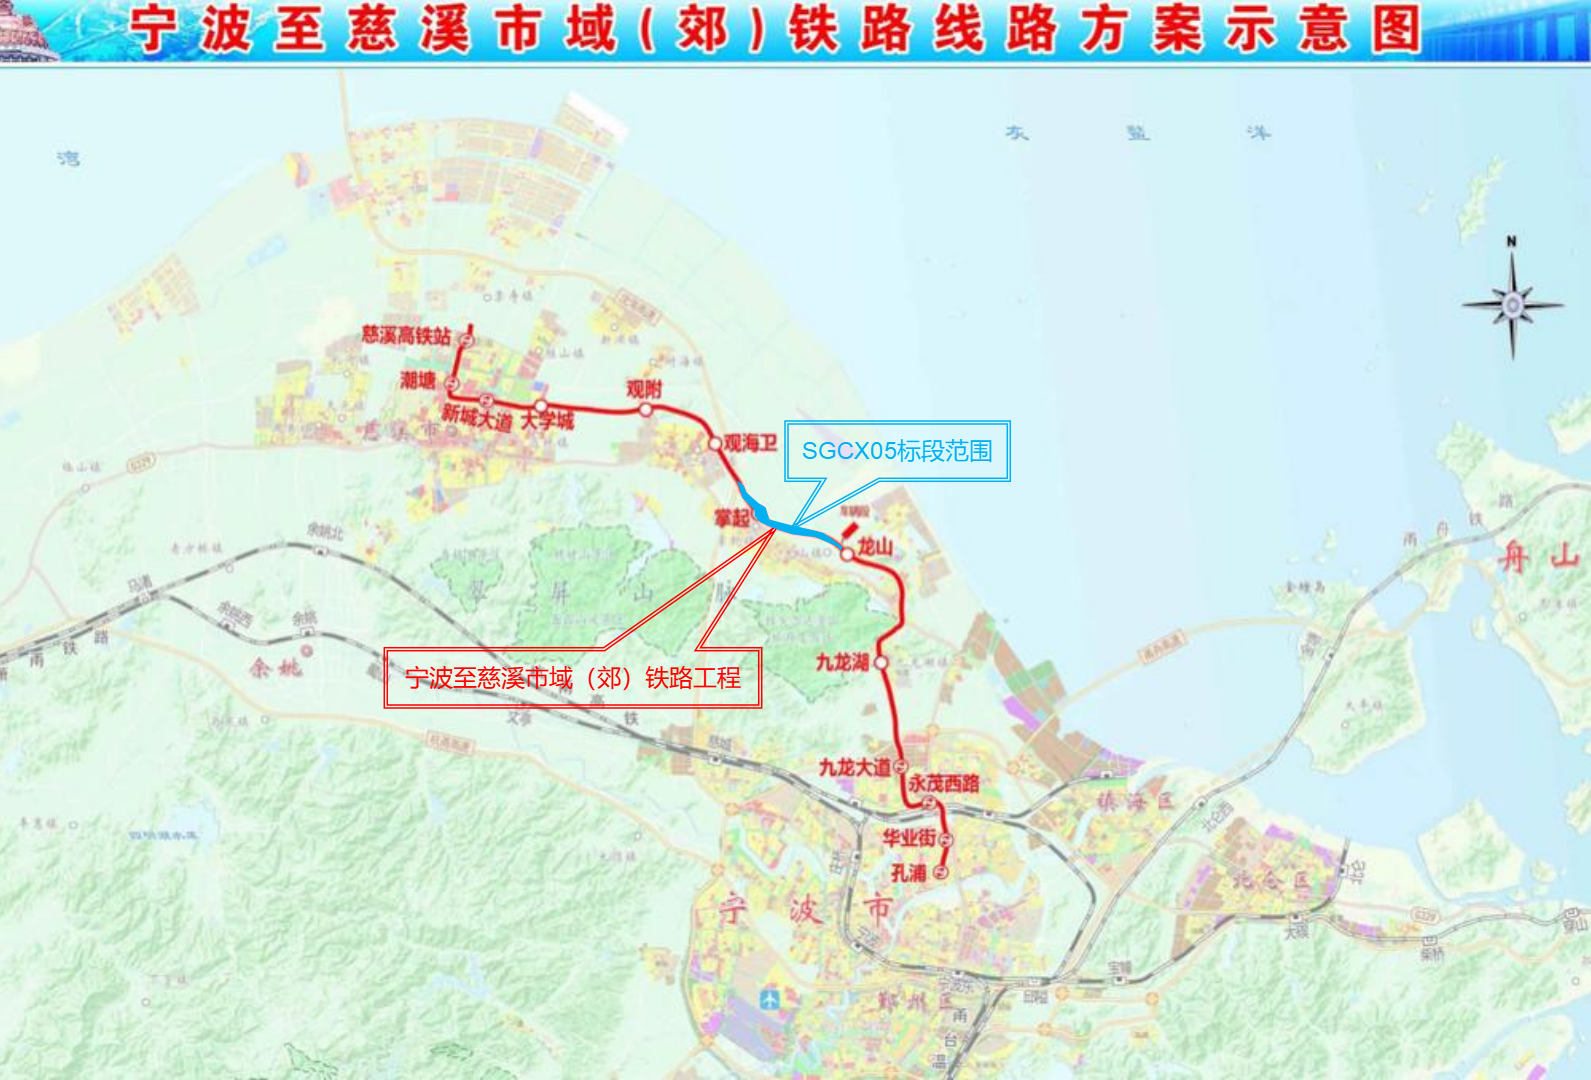 4.宁波至慈溪市郊铁路工程5标段路线示意图.png